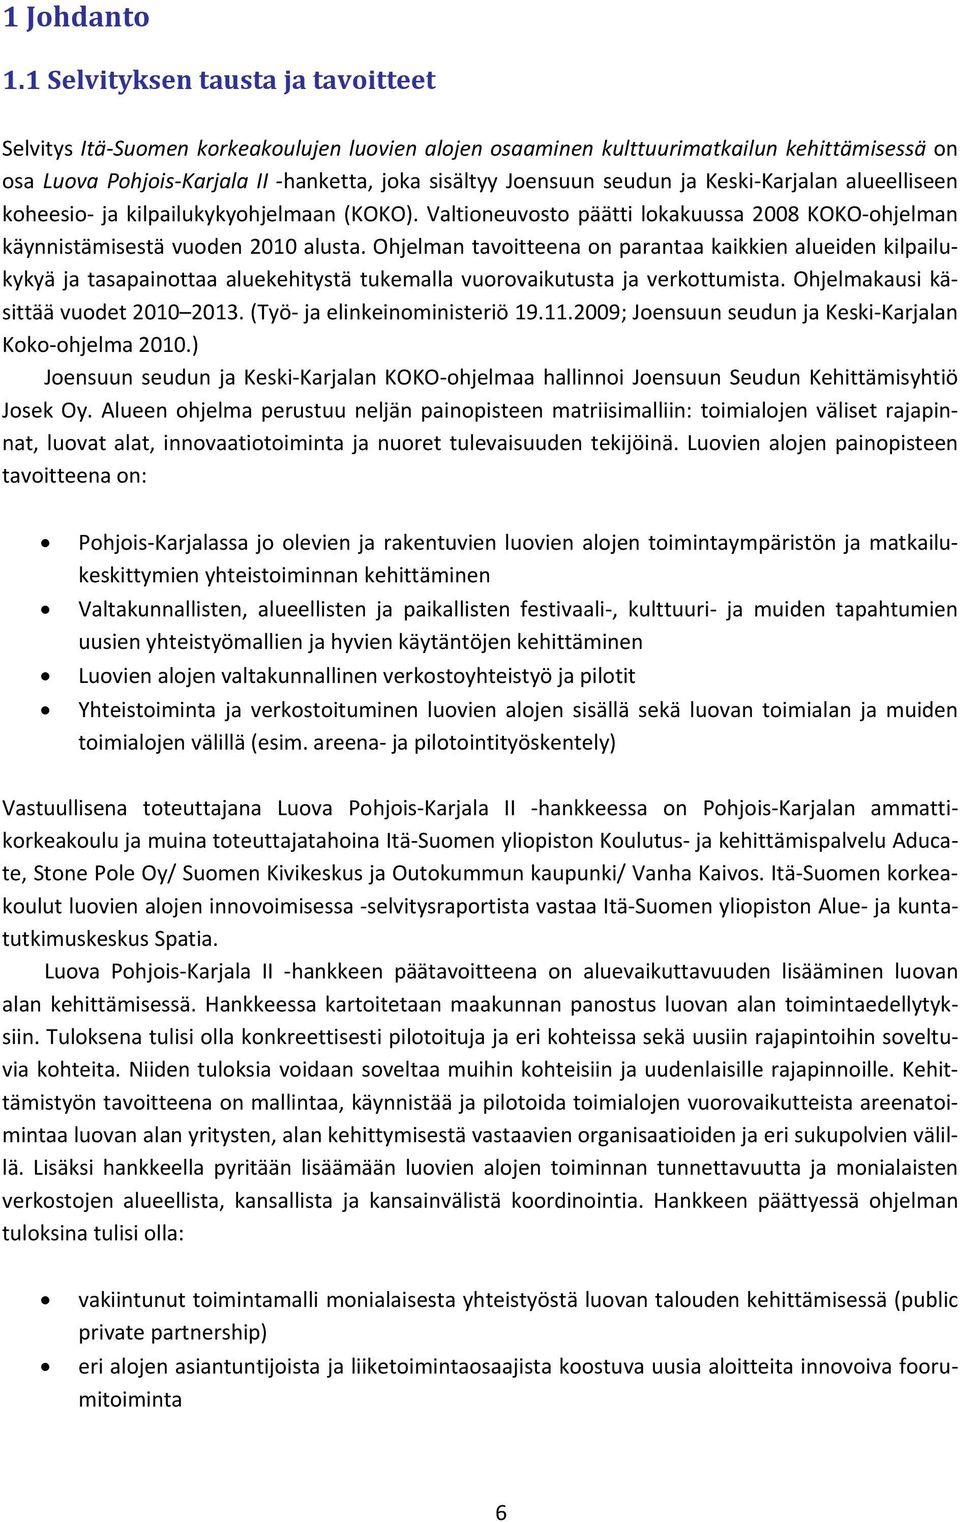 seudun ja Keski Karjalan alueelliseen koheesio ja kilpailukykyohjelmaan (KOKO). Valtioneuvosto päätti lokakuussa 2008 KOKO ohjelman käynnistämisestä vuoden 2010 alusta.